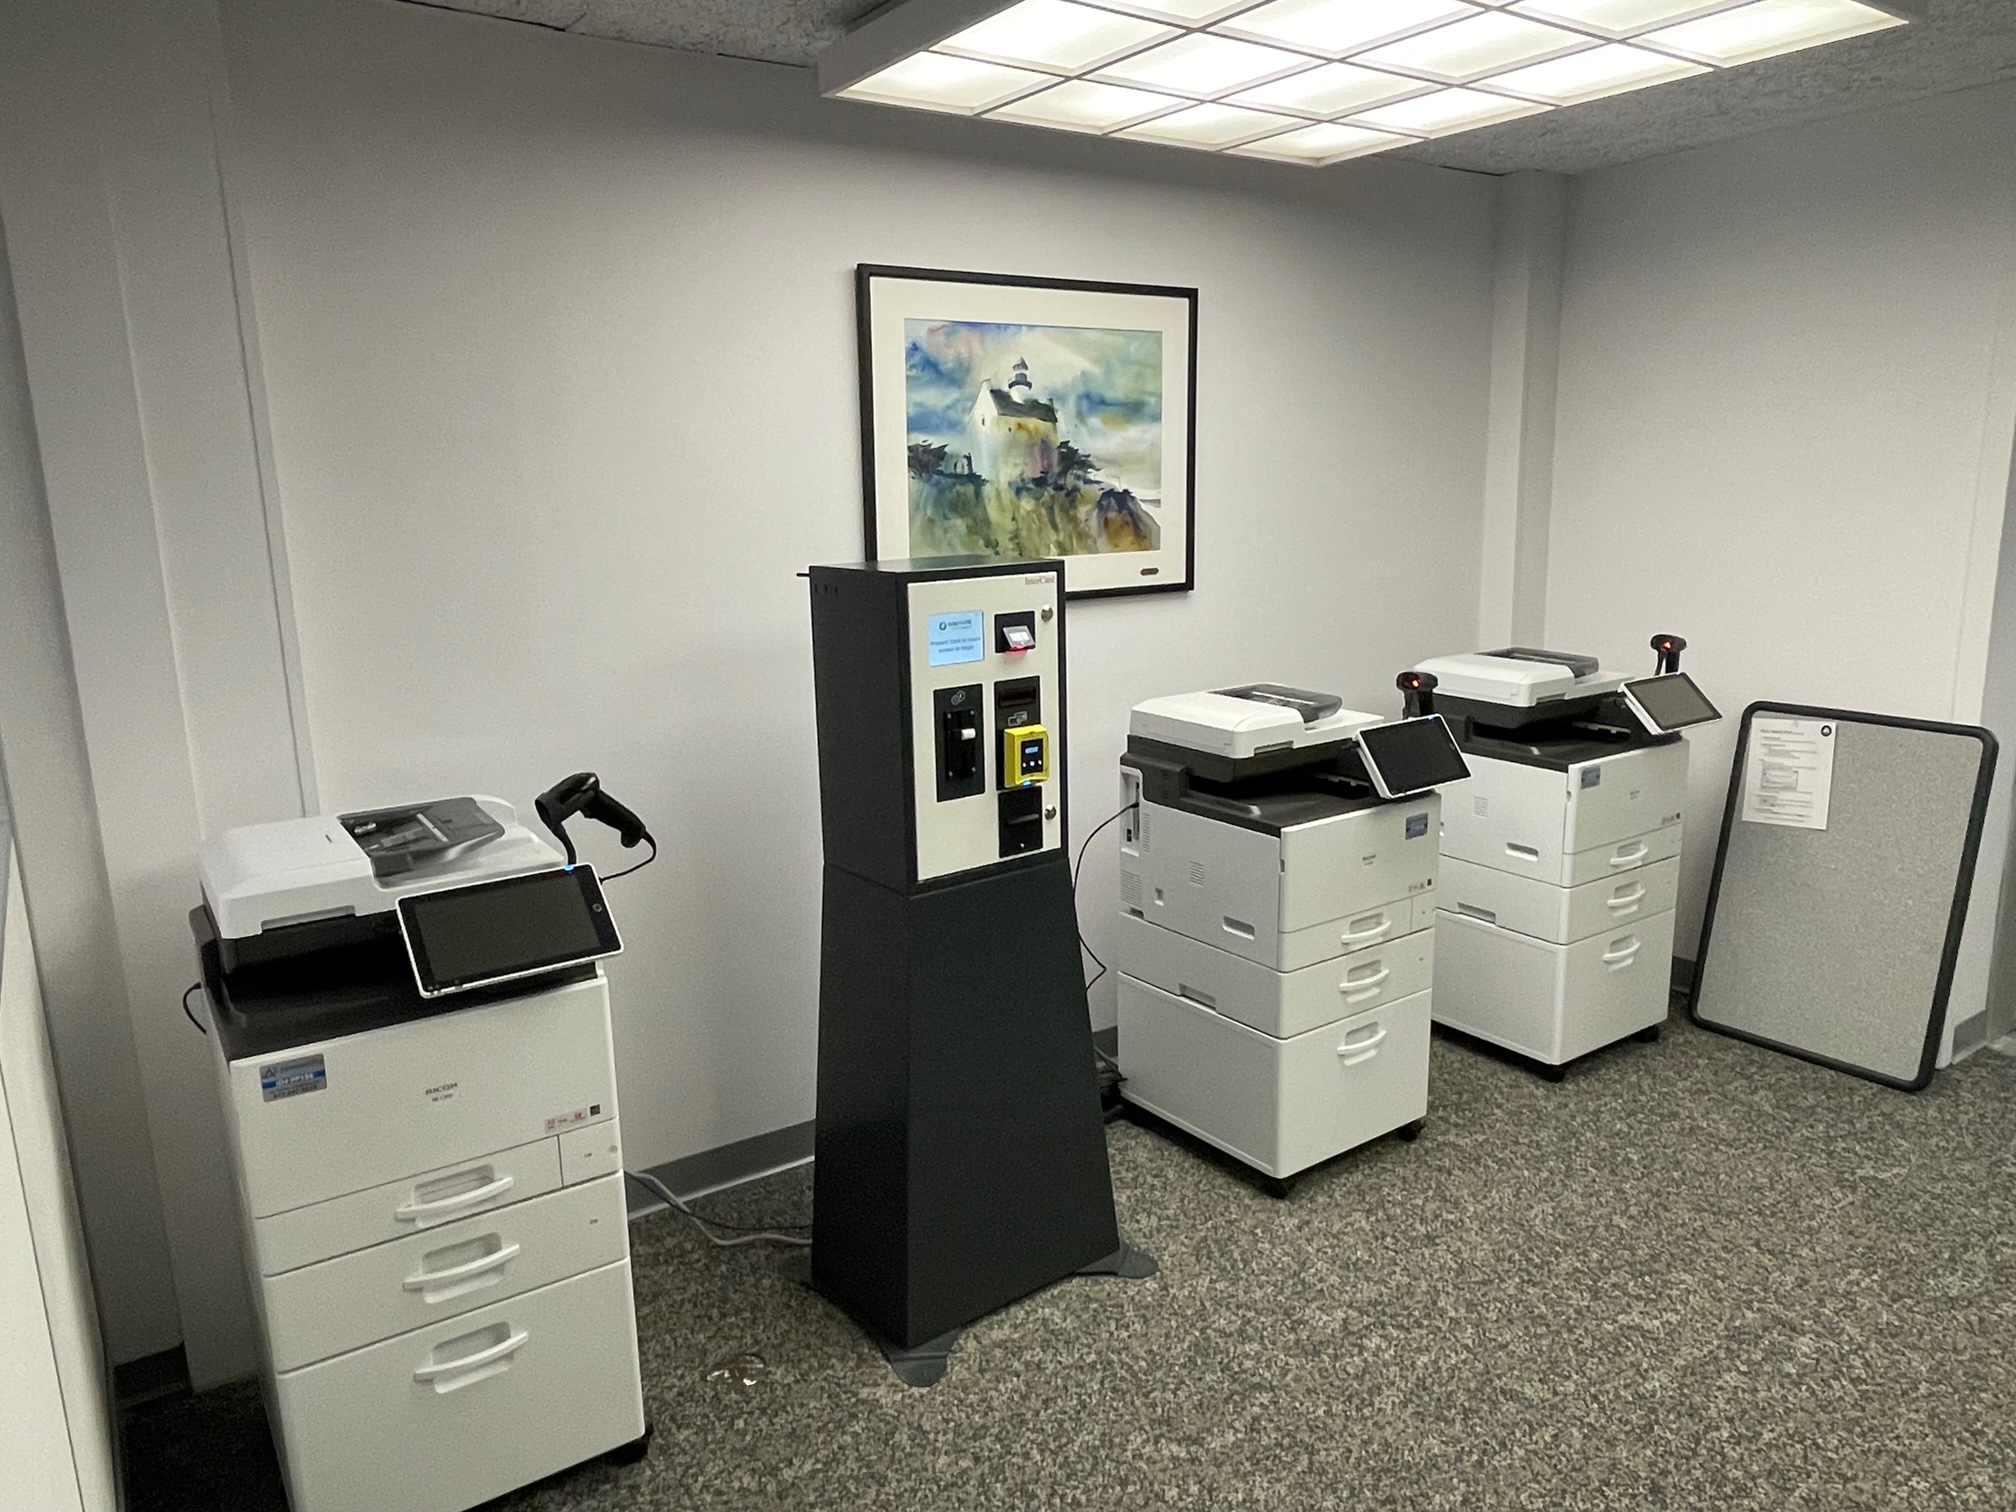 New copiers/printers - 6/2/2022